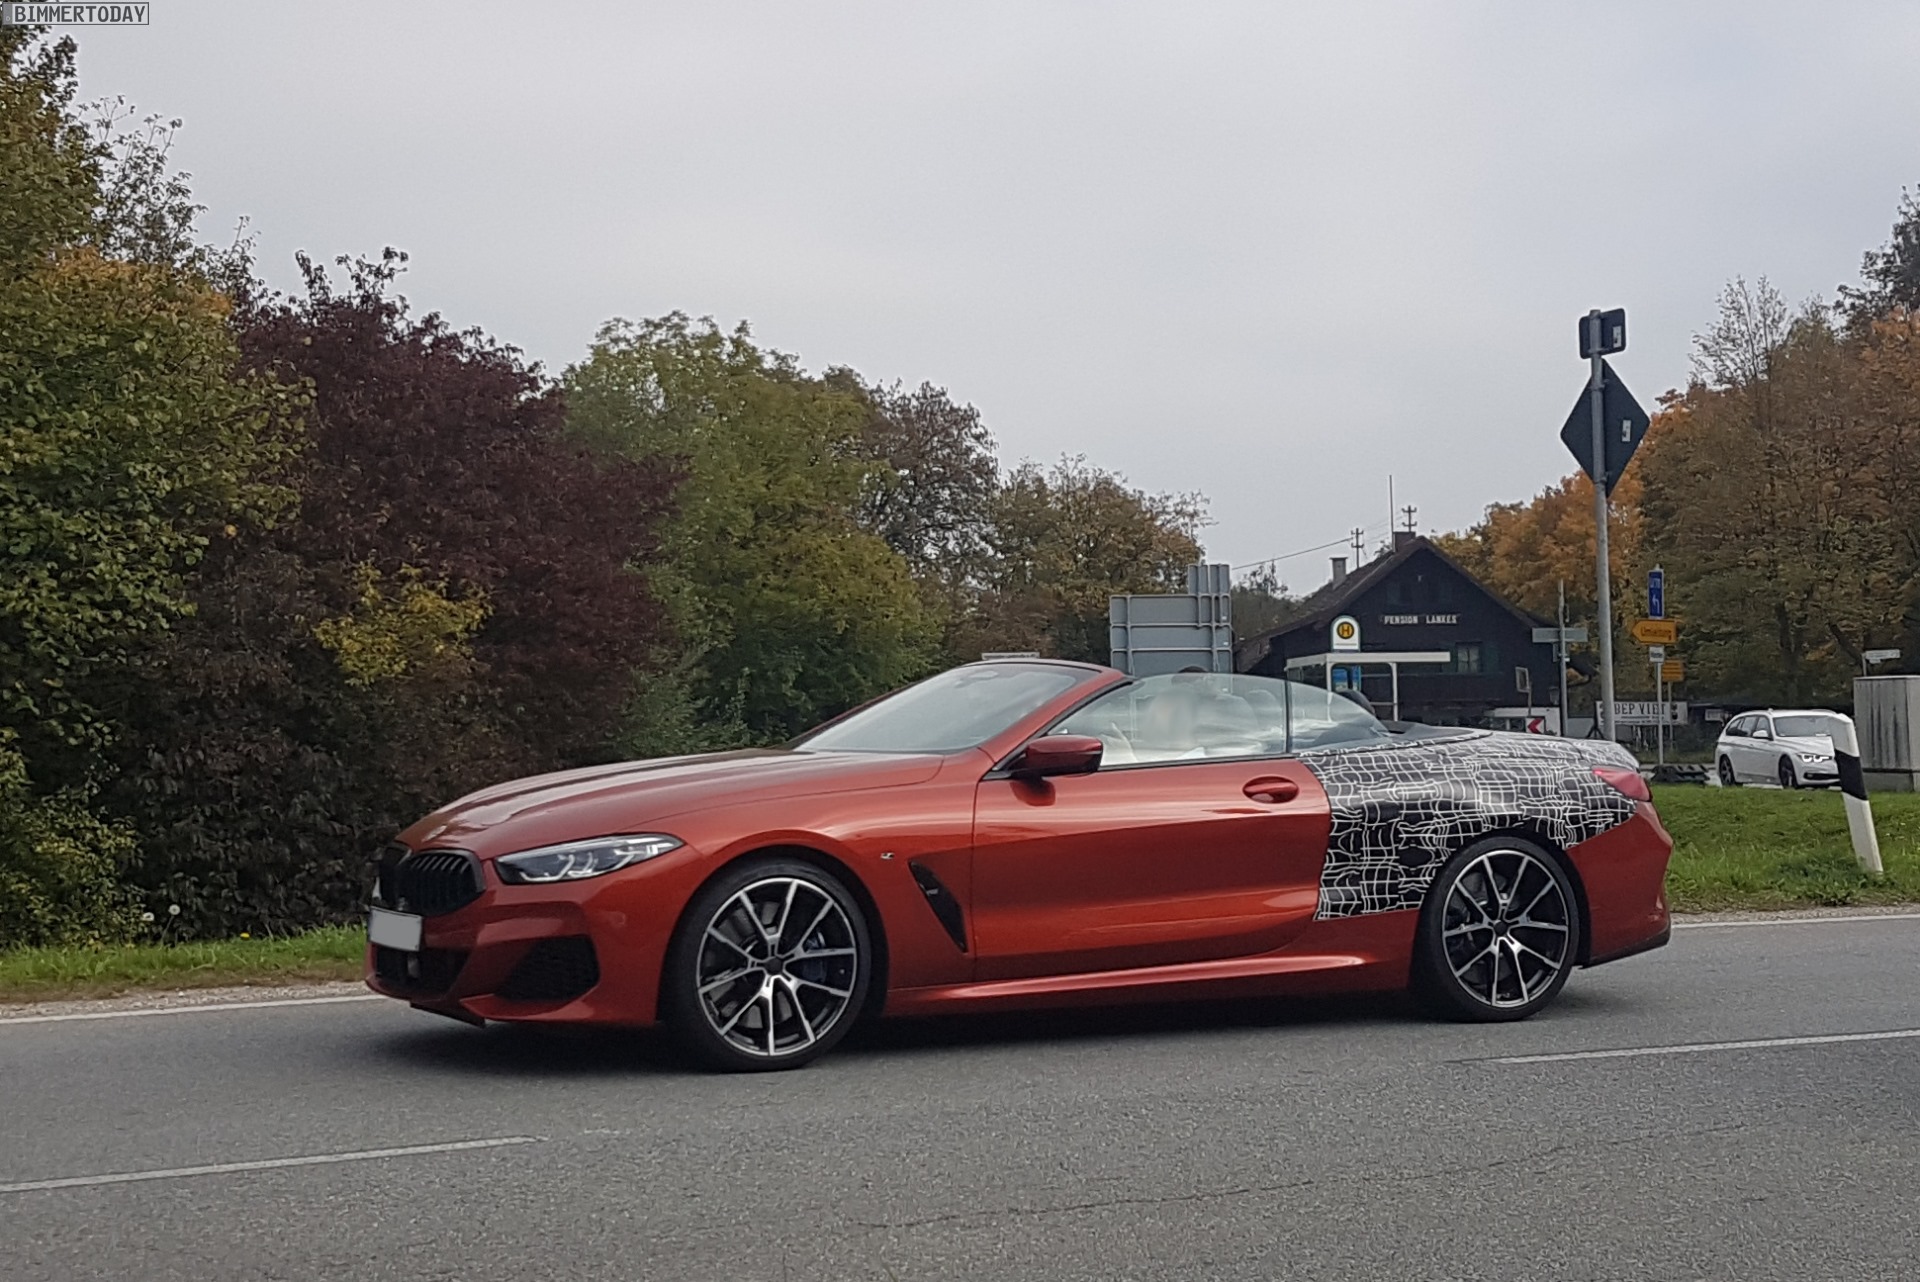 2019 BMW 8er Cabrio Sunset Orange Spyshots 02